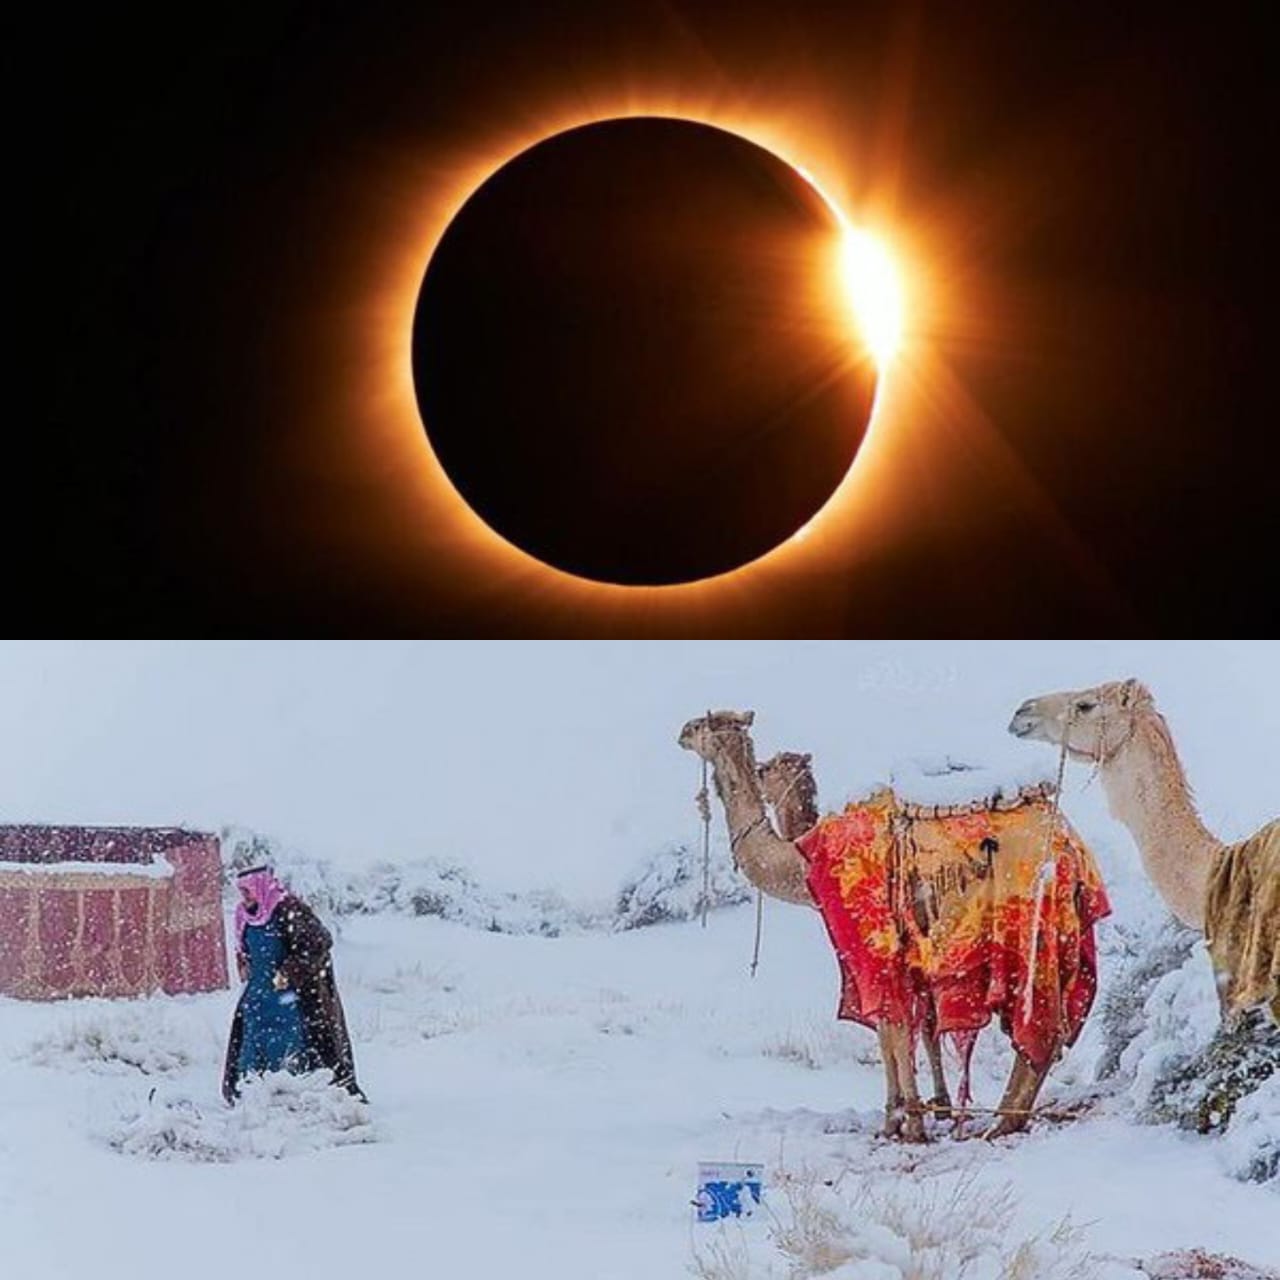 Gerhana Matahari dan Turunnya Salju di Arab Saudi Persis dengan Sabda Rasulullah SAW Tentang Akhir Zaman